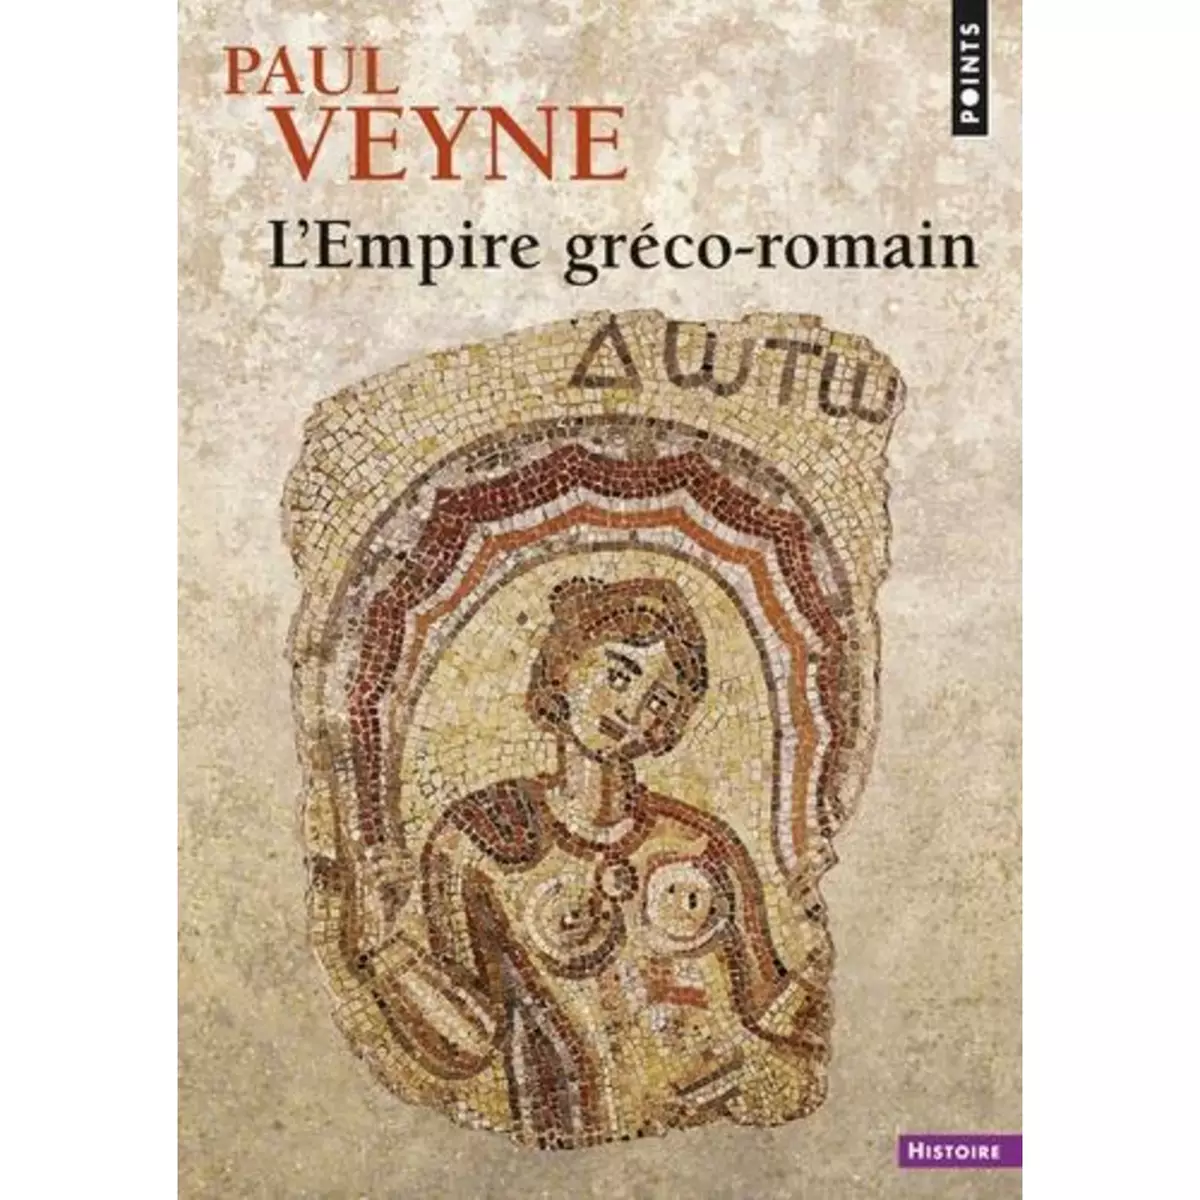  L'EMPIRE GRECO-ROMAIN, Veyne Paul